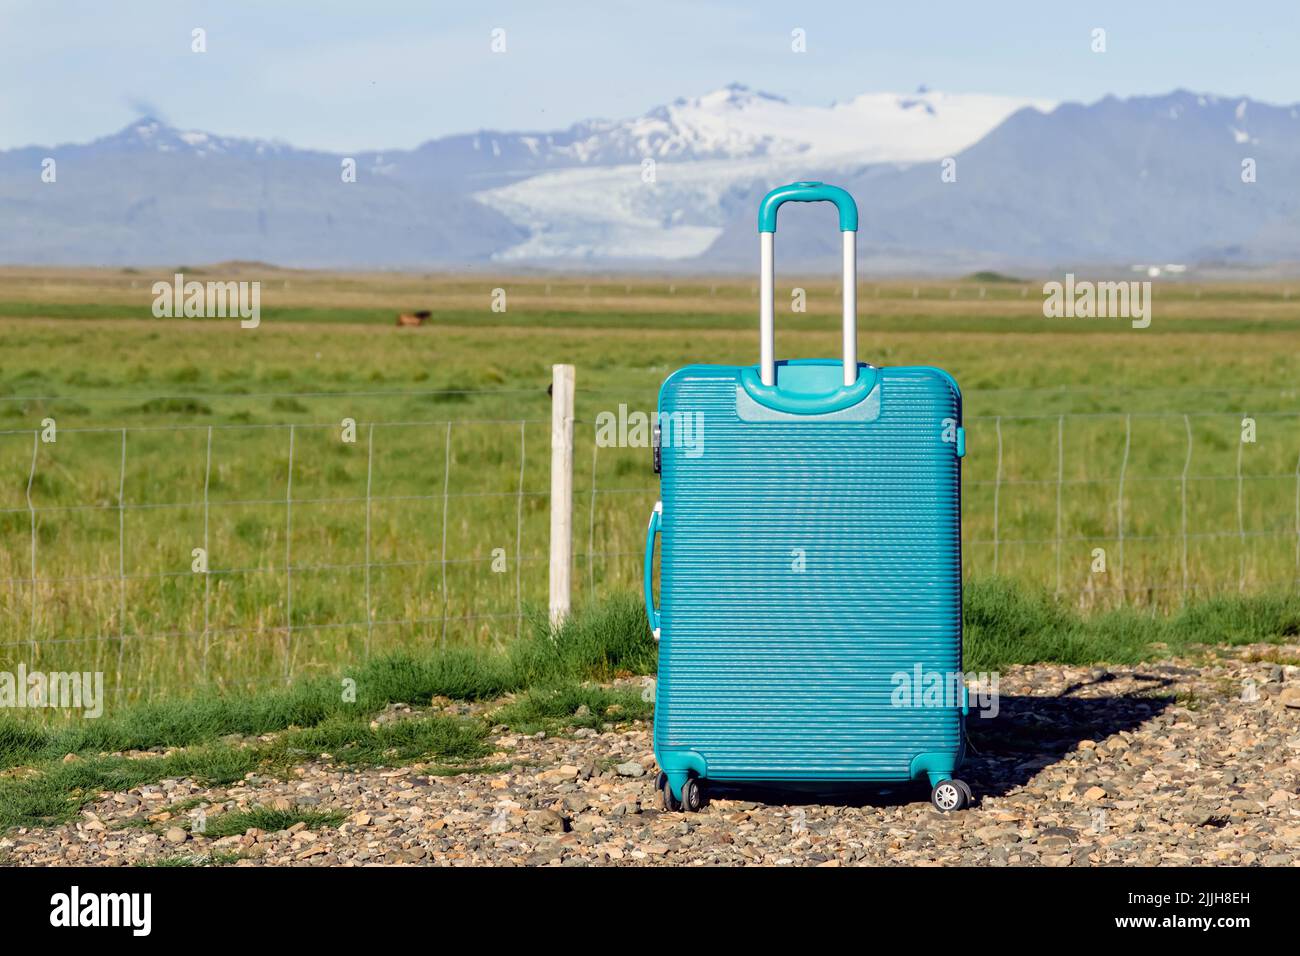 Maleta de equipaje azul individual frente a pastos verdes y montañas con glaciar en días soleados y cielo azul. Mucho espacio de copia en la cara. Foto de stock